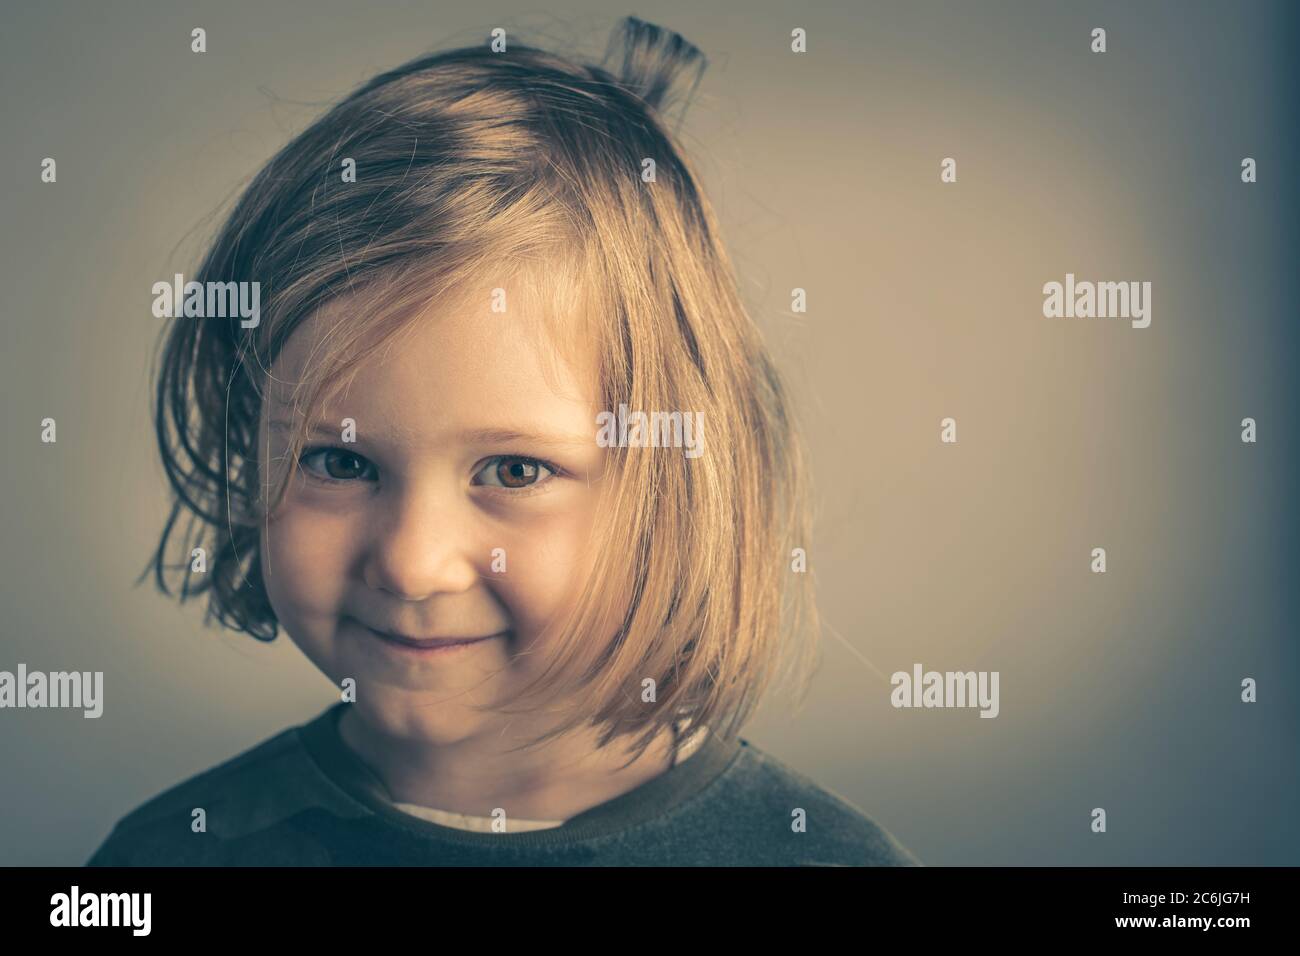 portrait de bébé fille blonde âgée de 2 ans Stock Photo